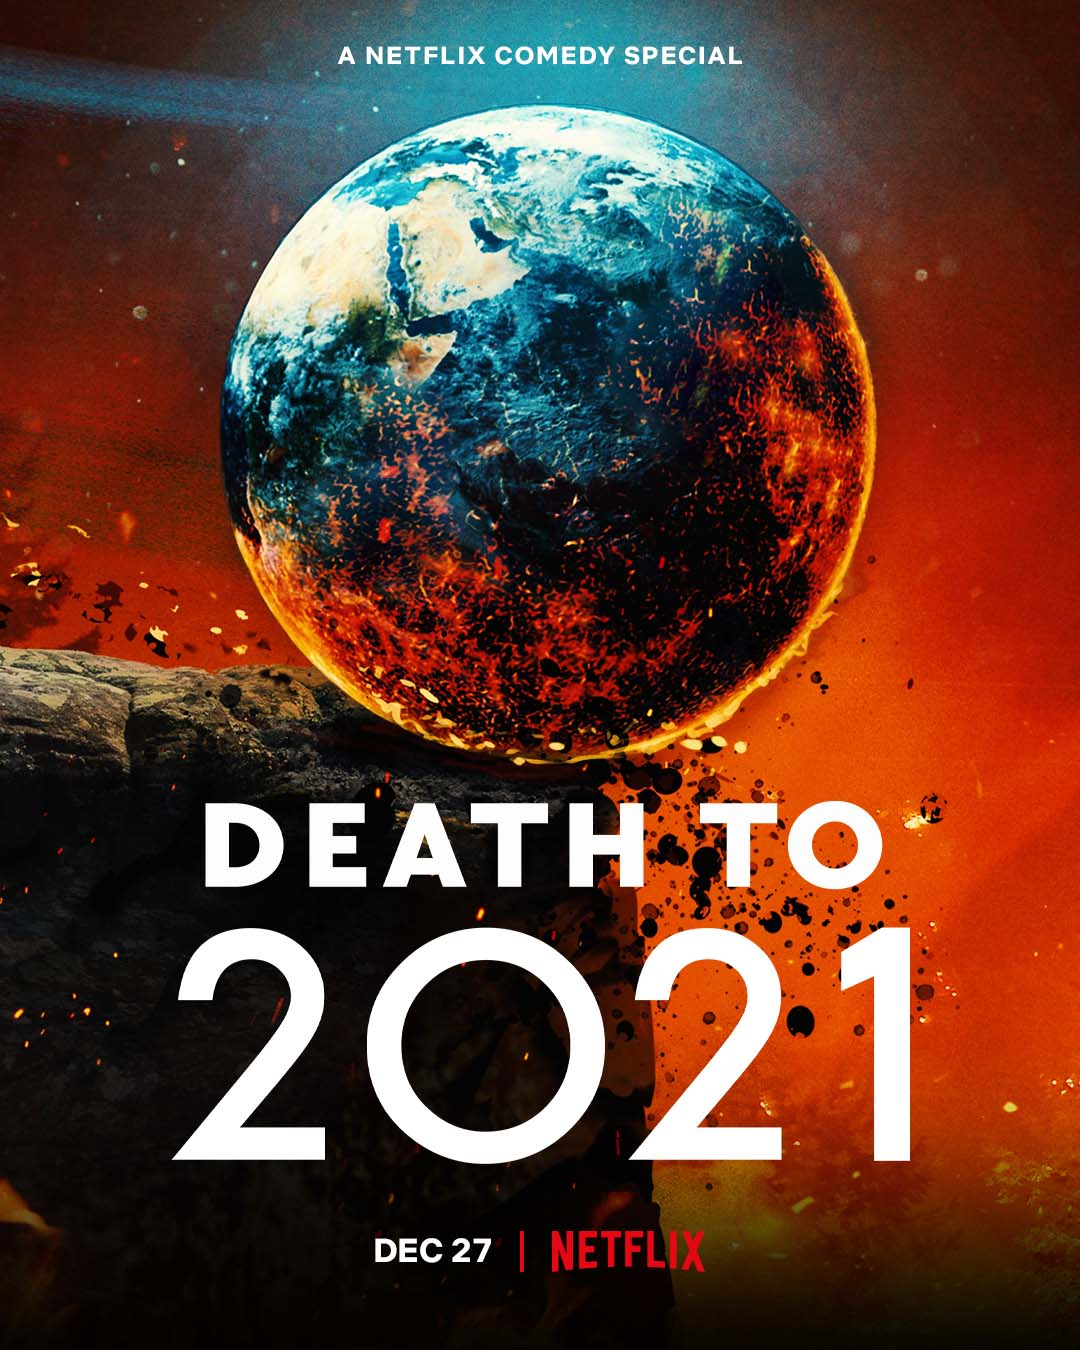 Cartel de cine de Muerte al 2021 de Netflix